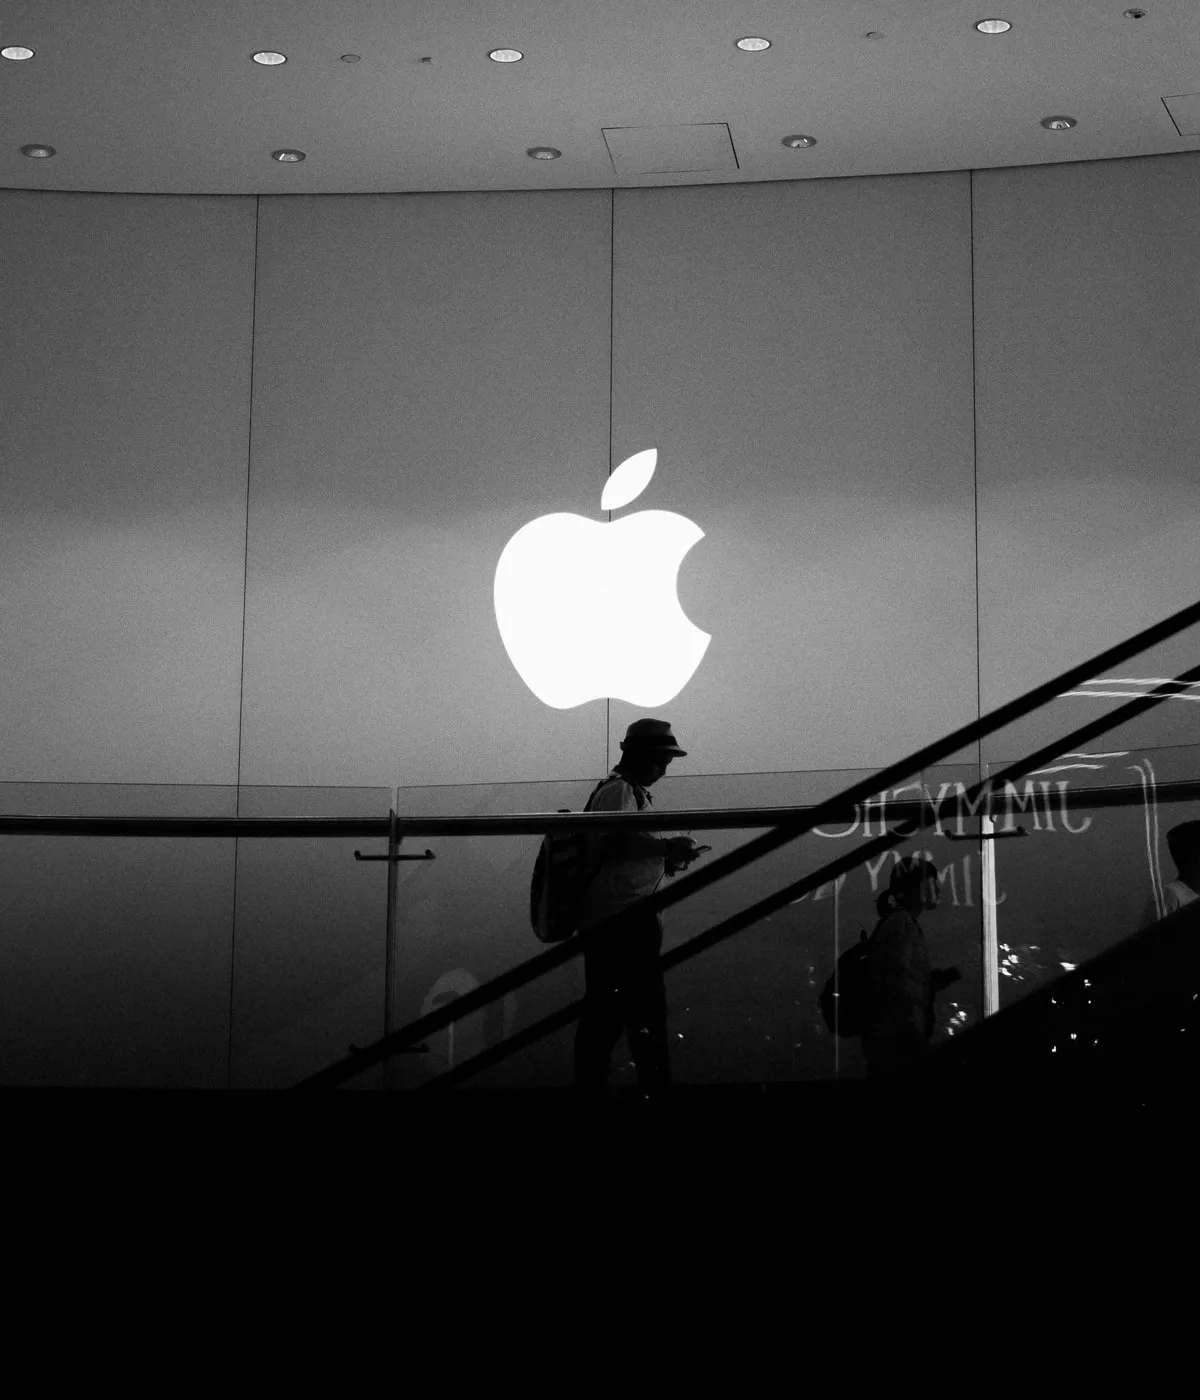 Logo Apple lumineux, personne en silhouette.